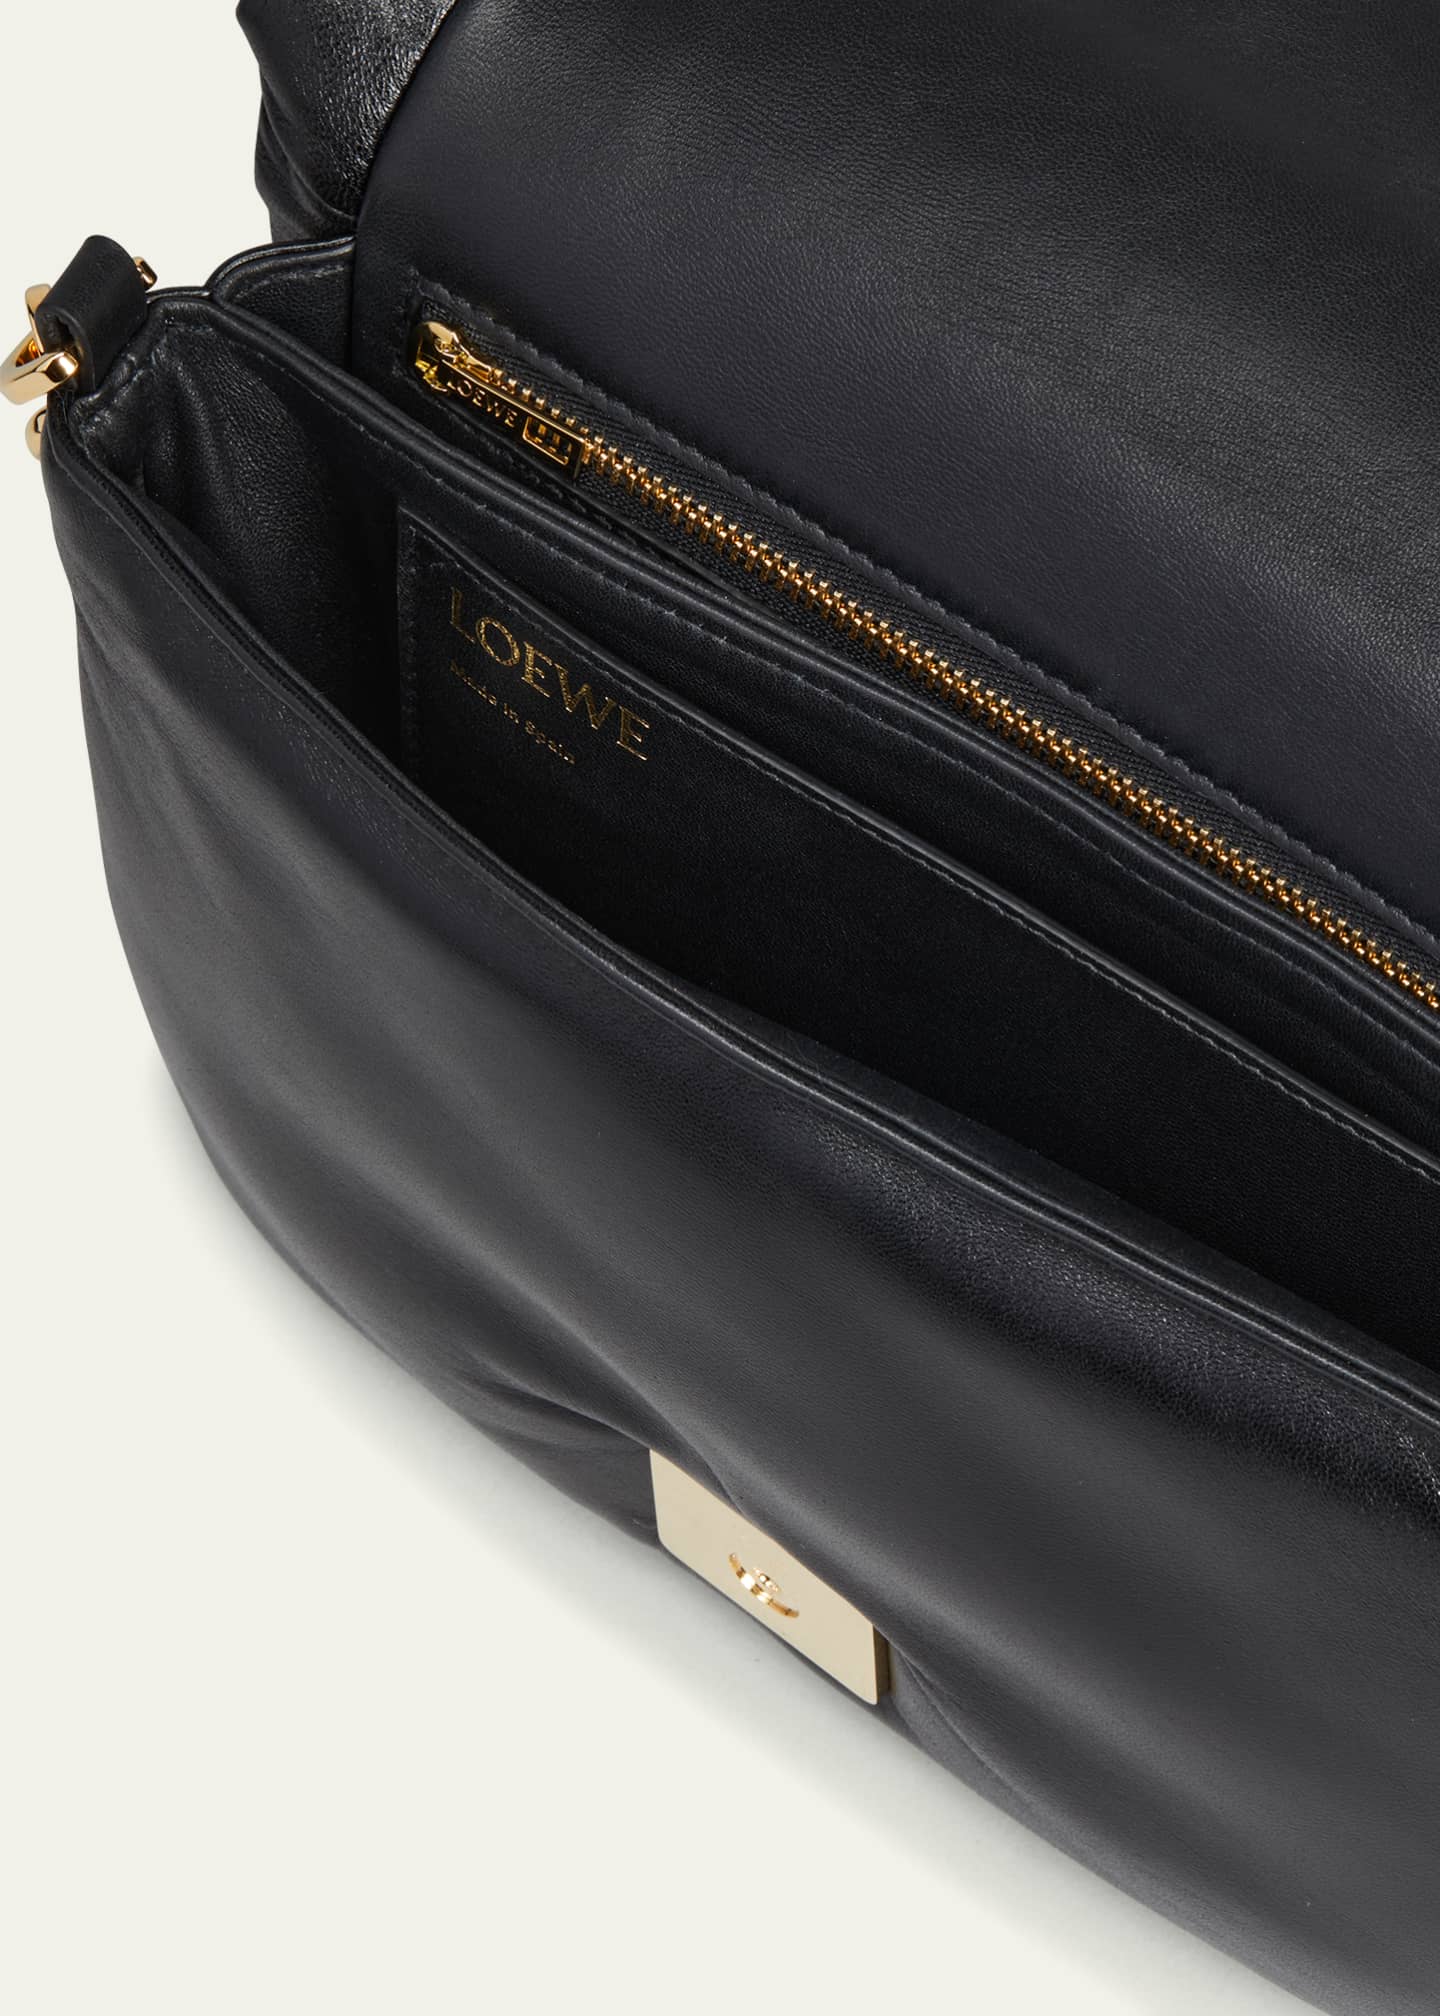 Loewe Goya Small Leather Crossbody Bag